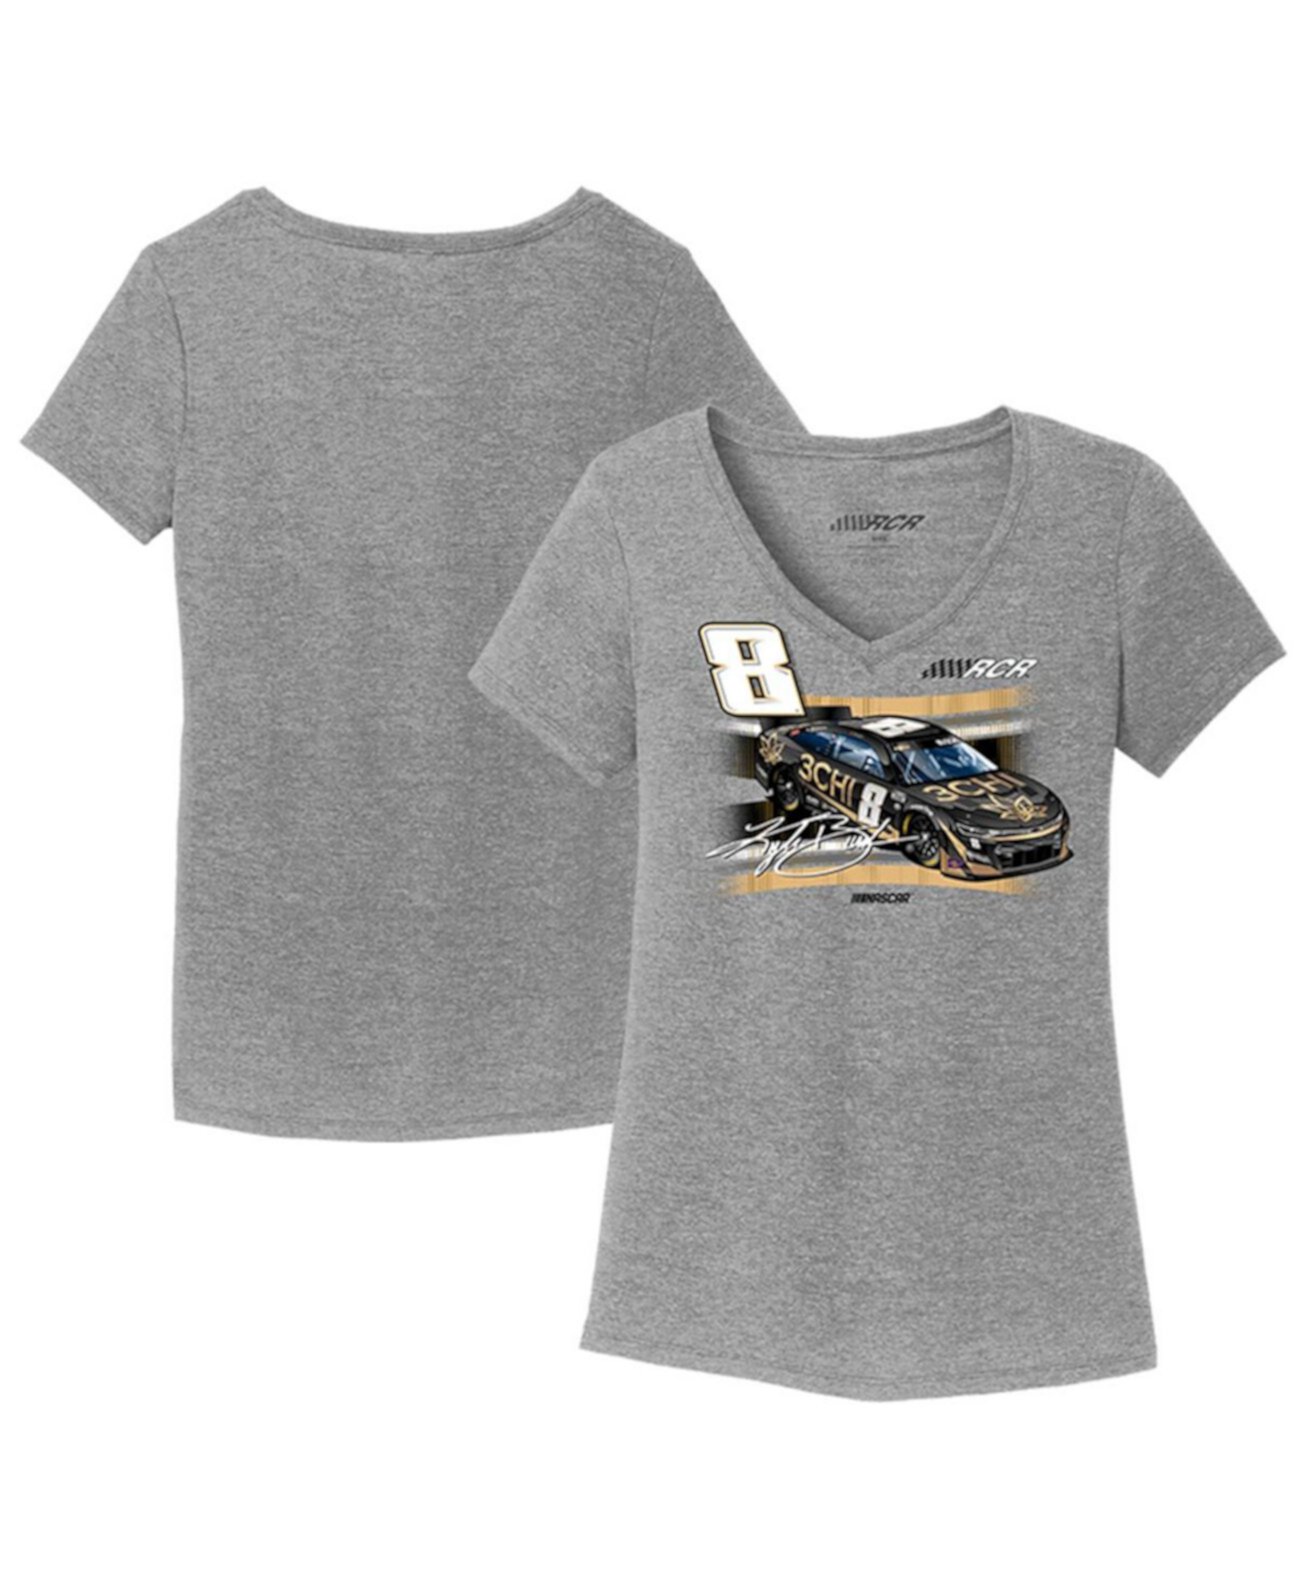 Женская футболка Heather Grey Kyle Busch 3CHI Car Tri-Blend с v-образным вырезом Richard Childress Racing Team Collection